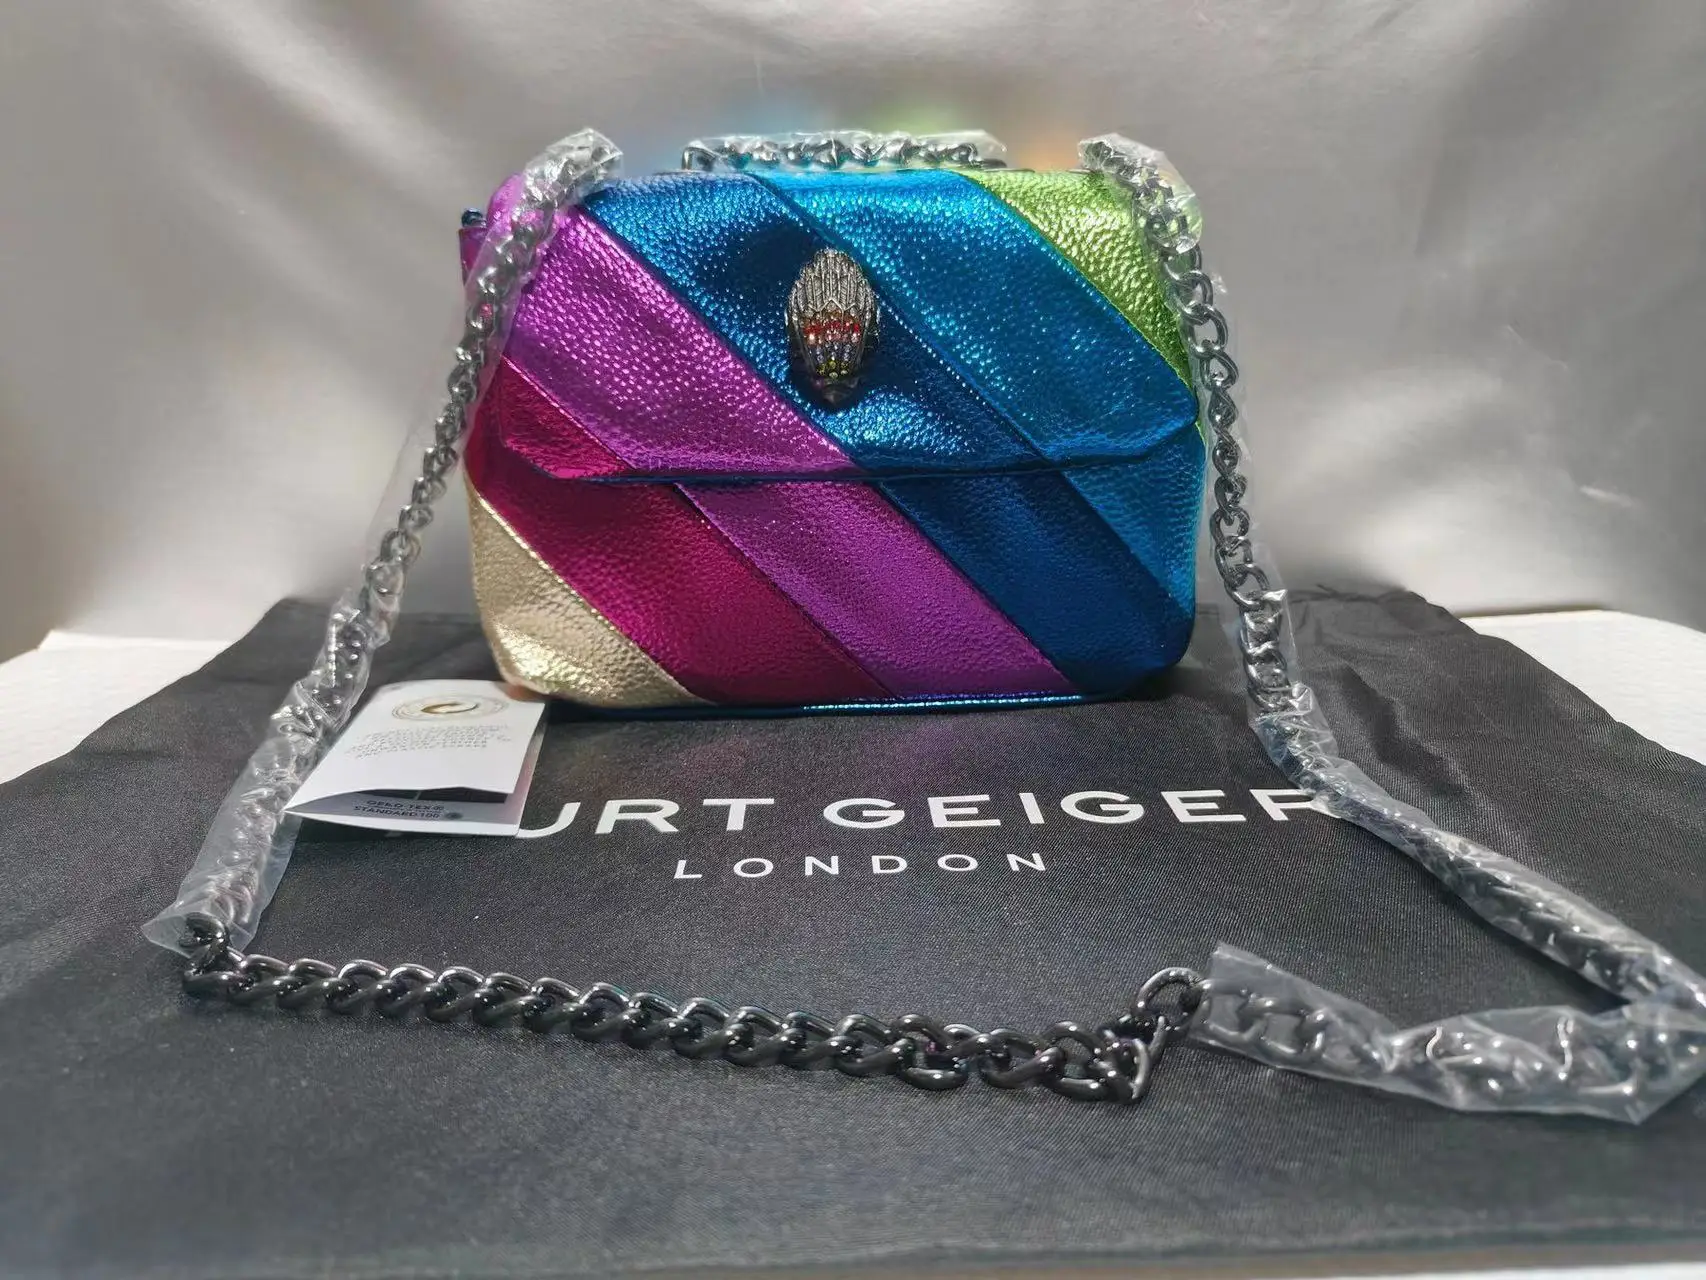 

Сумка-тоут женская с орлом, портативная Радужная цветная кросс-боди сумка Курта Гейгера с металлическим логотипом, с кристаллами